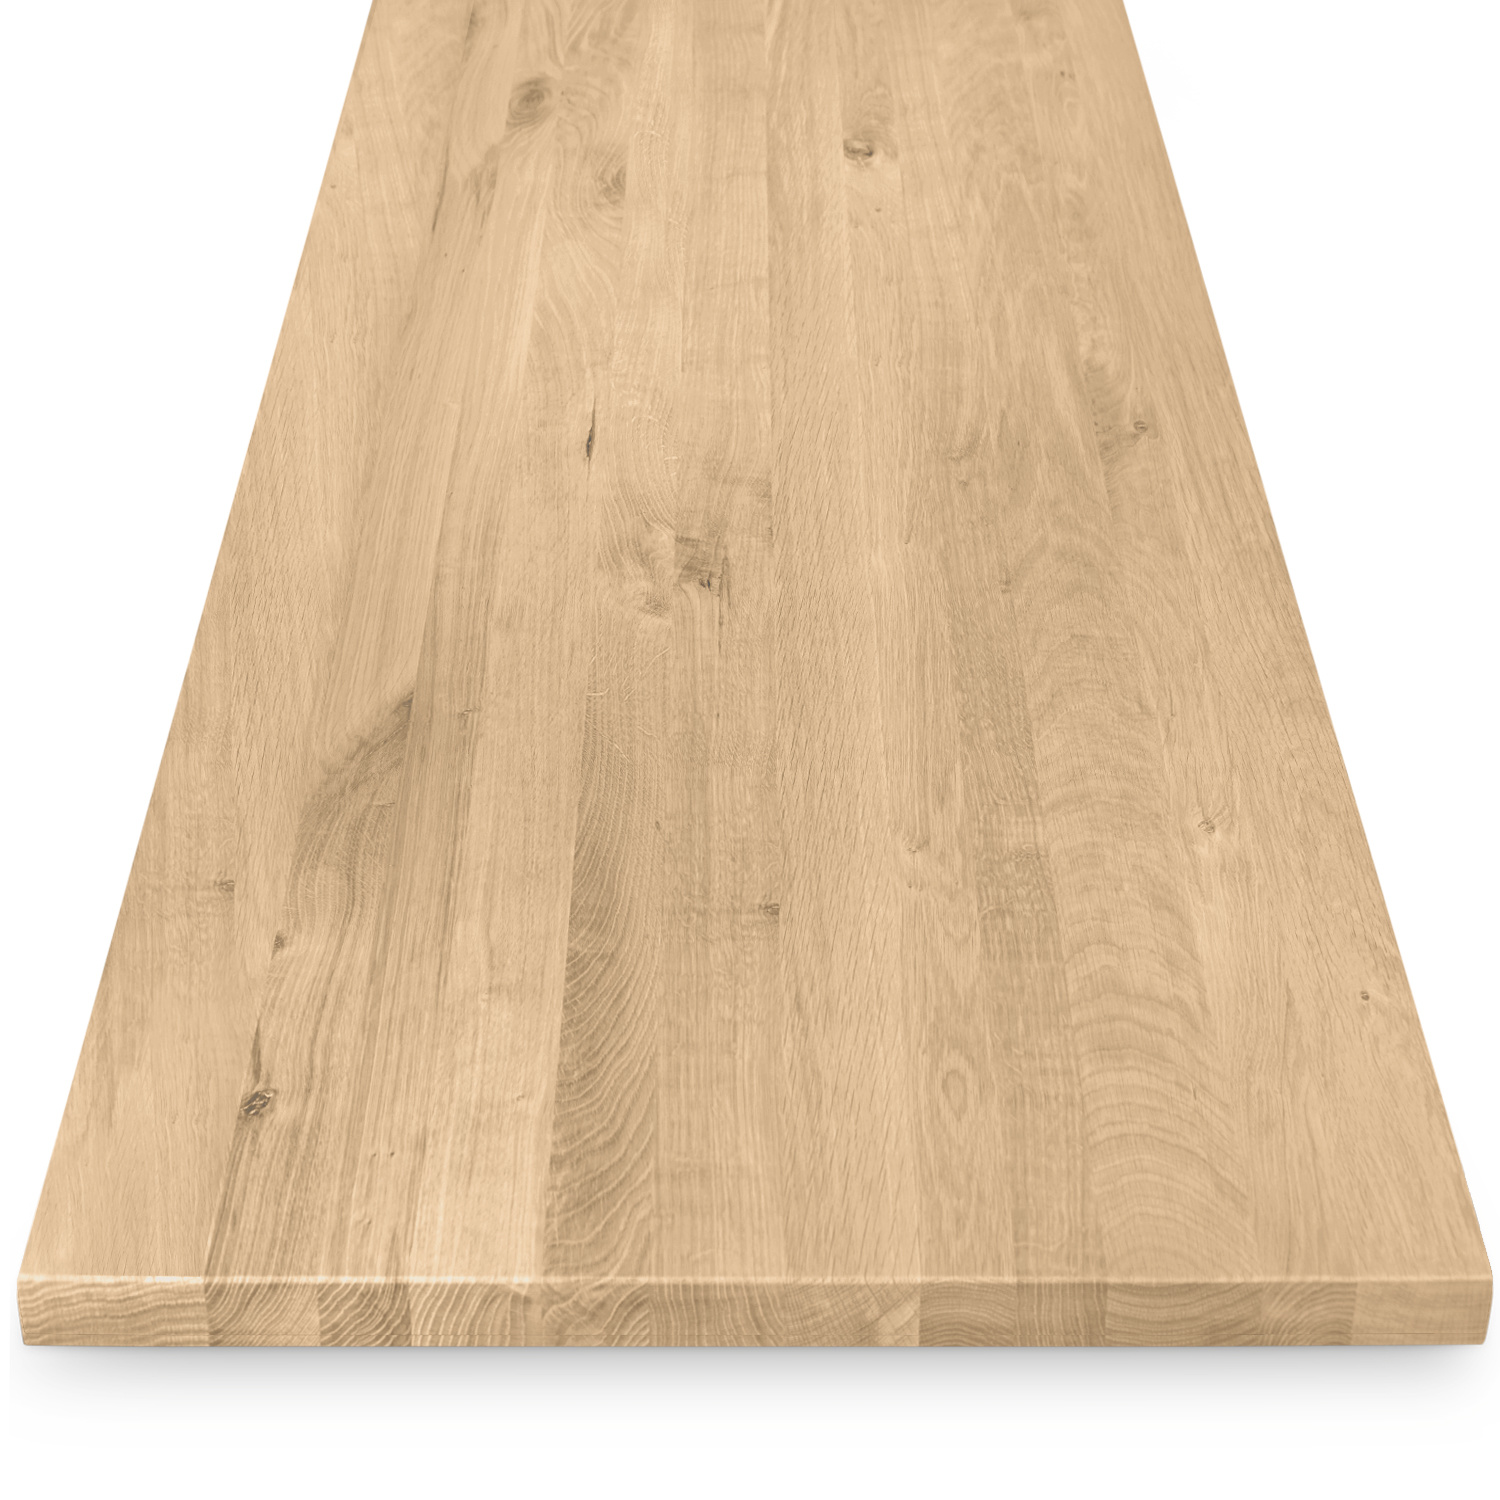  Tischplatte Eiche nach Maß - 4 cm dick - Eichenholz rustikal - Eiche Tischplatte massiv - verleimt & künstlich getrocknet (HF 8-12%) - 50-120x50-300 cm